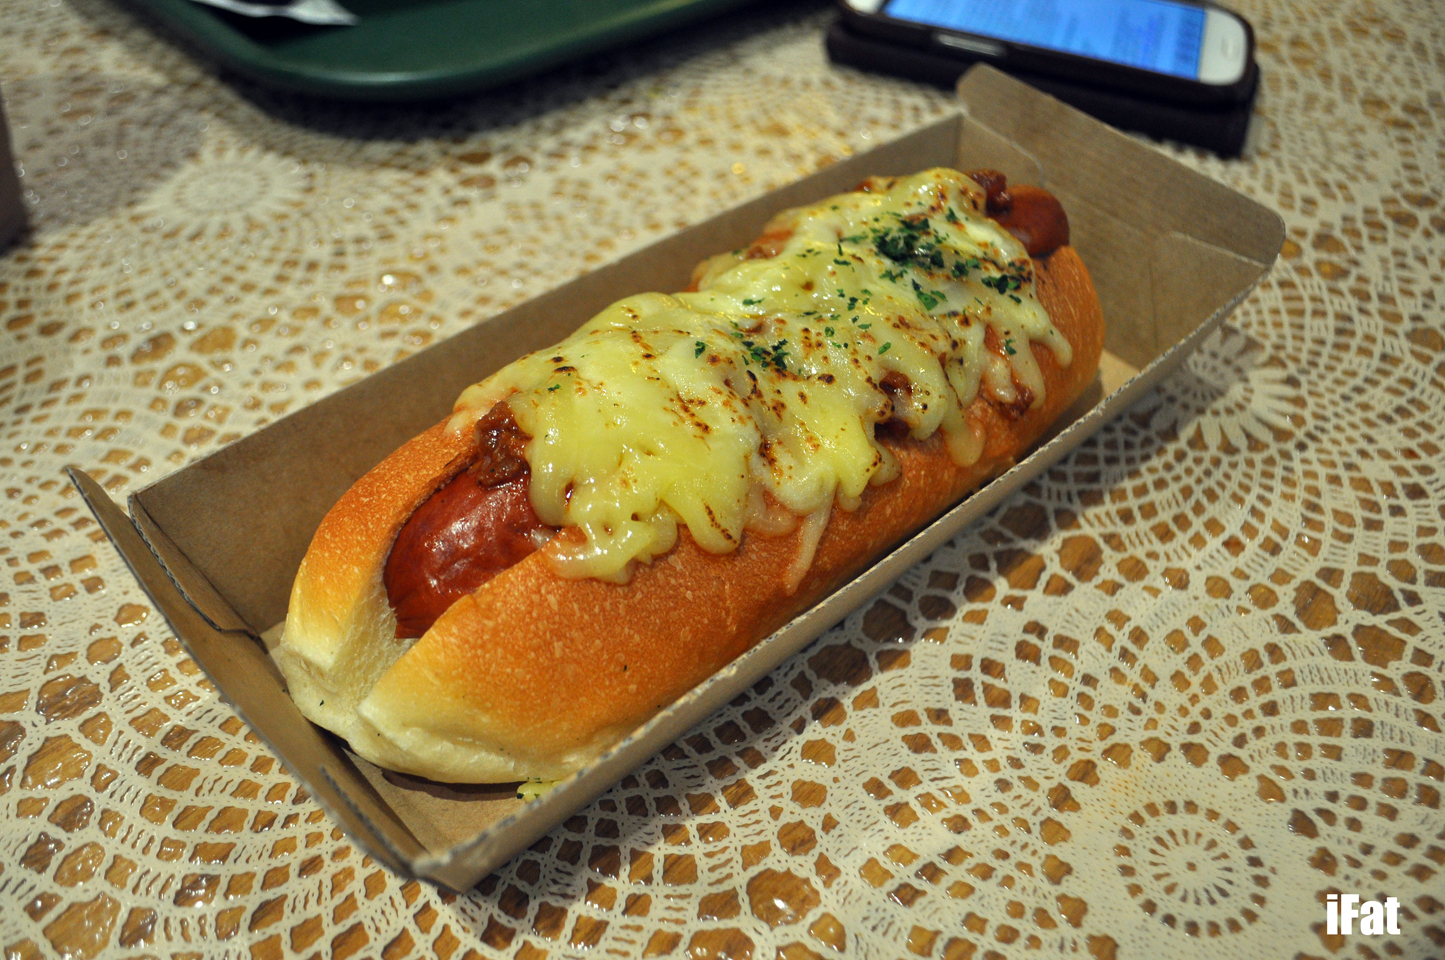 Hot dog at Dog Dog Japon, CBD